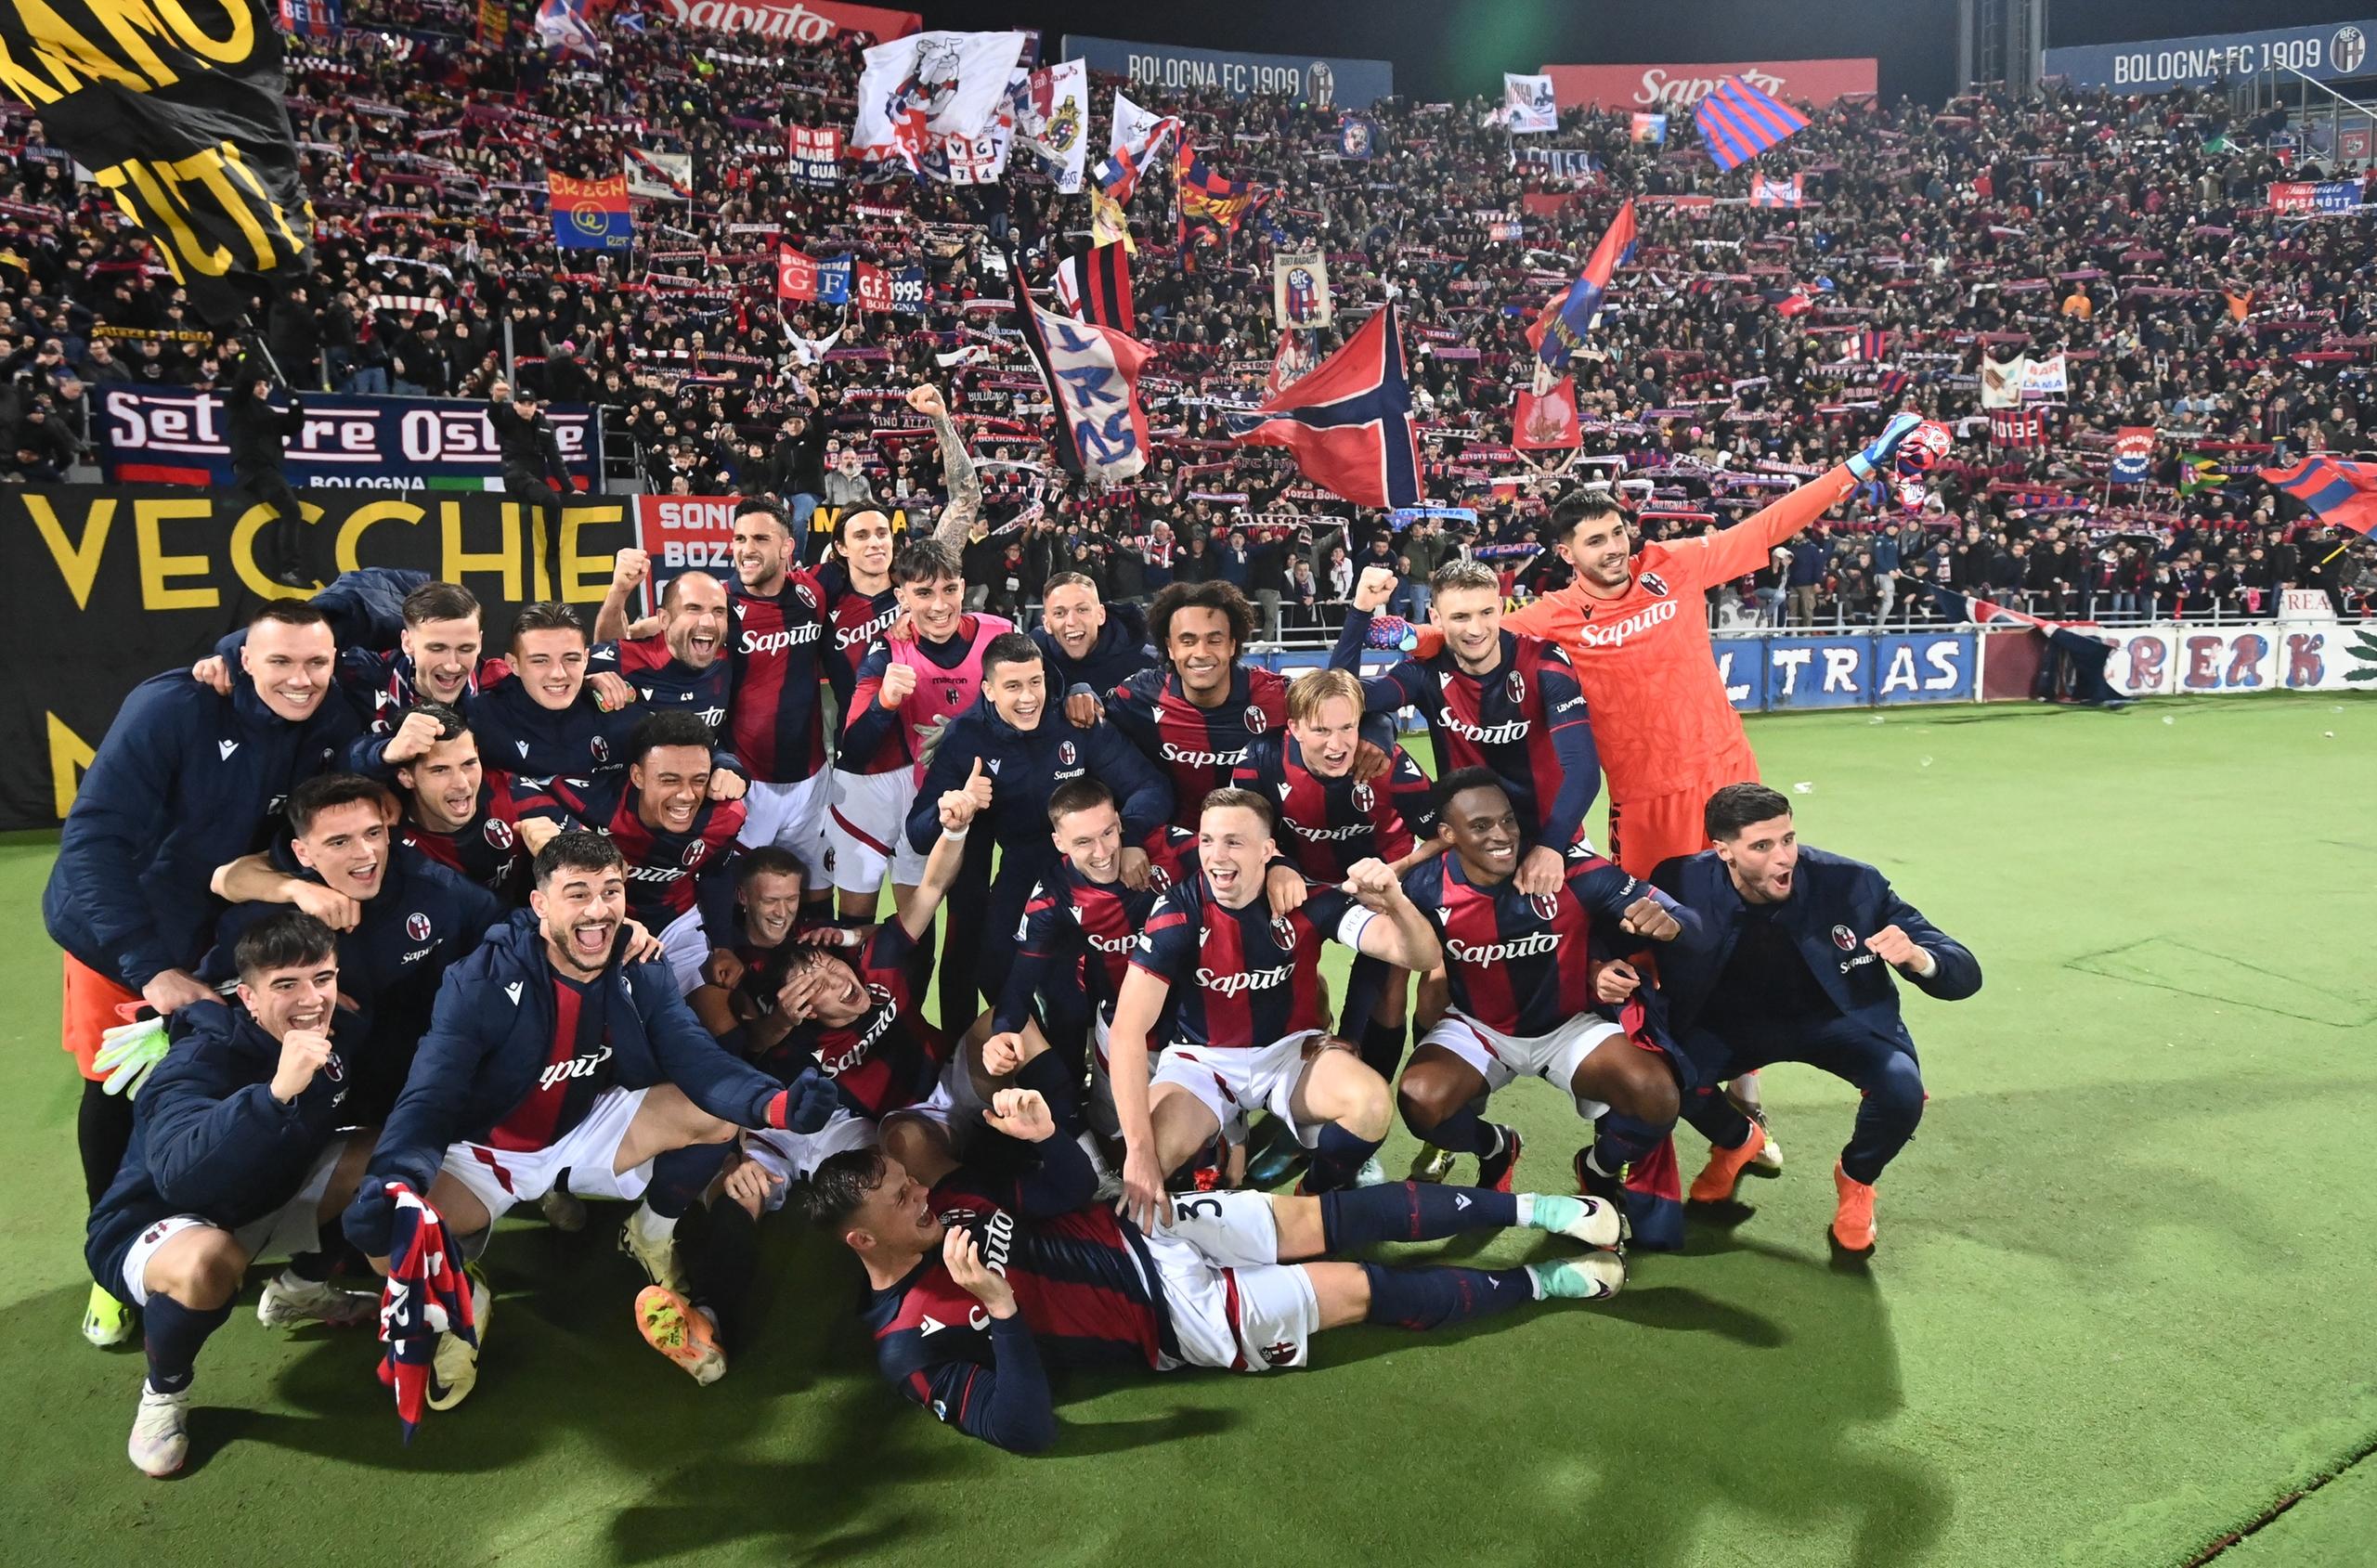 Una notte da Champions: tutti pazzi per il Bologna e la gioia